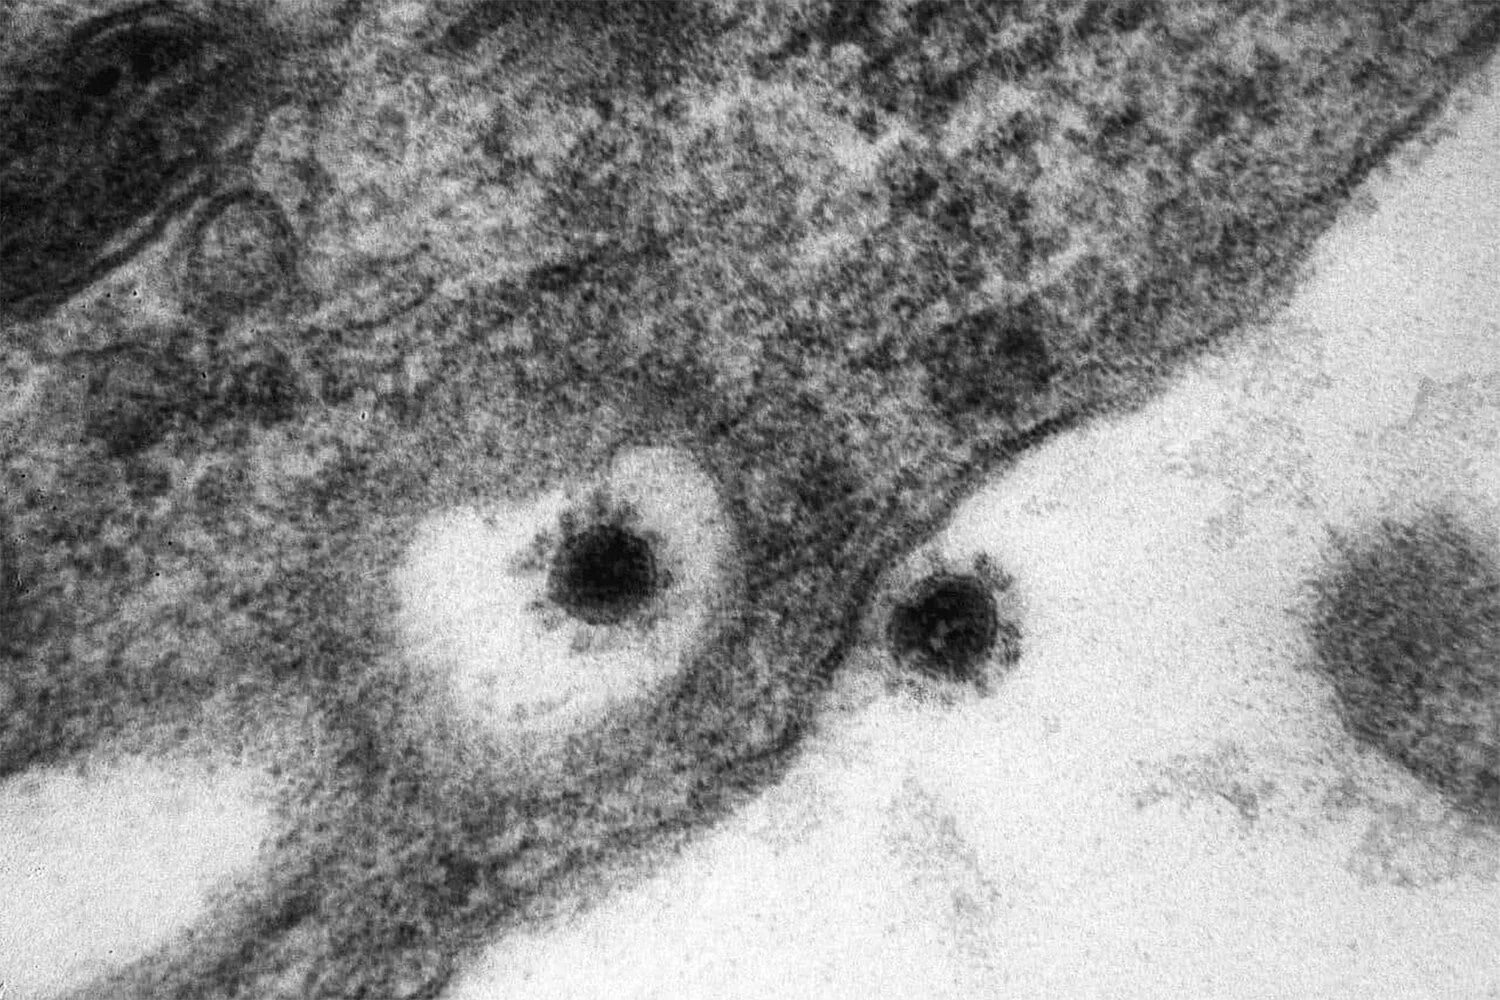 SARS-cov-2 Дельта штамм. Вирус Covid 19 под микроскопом. Вирус SARS-cov-2 под микроскопом. Штаммы коронавируса под микроскопом. Вирус флеров